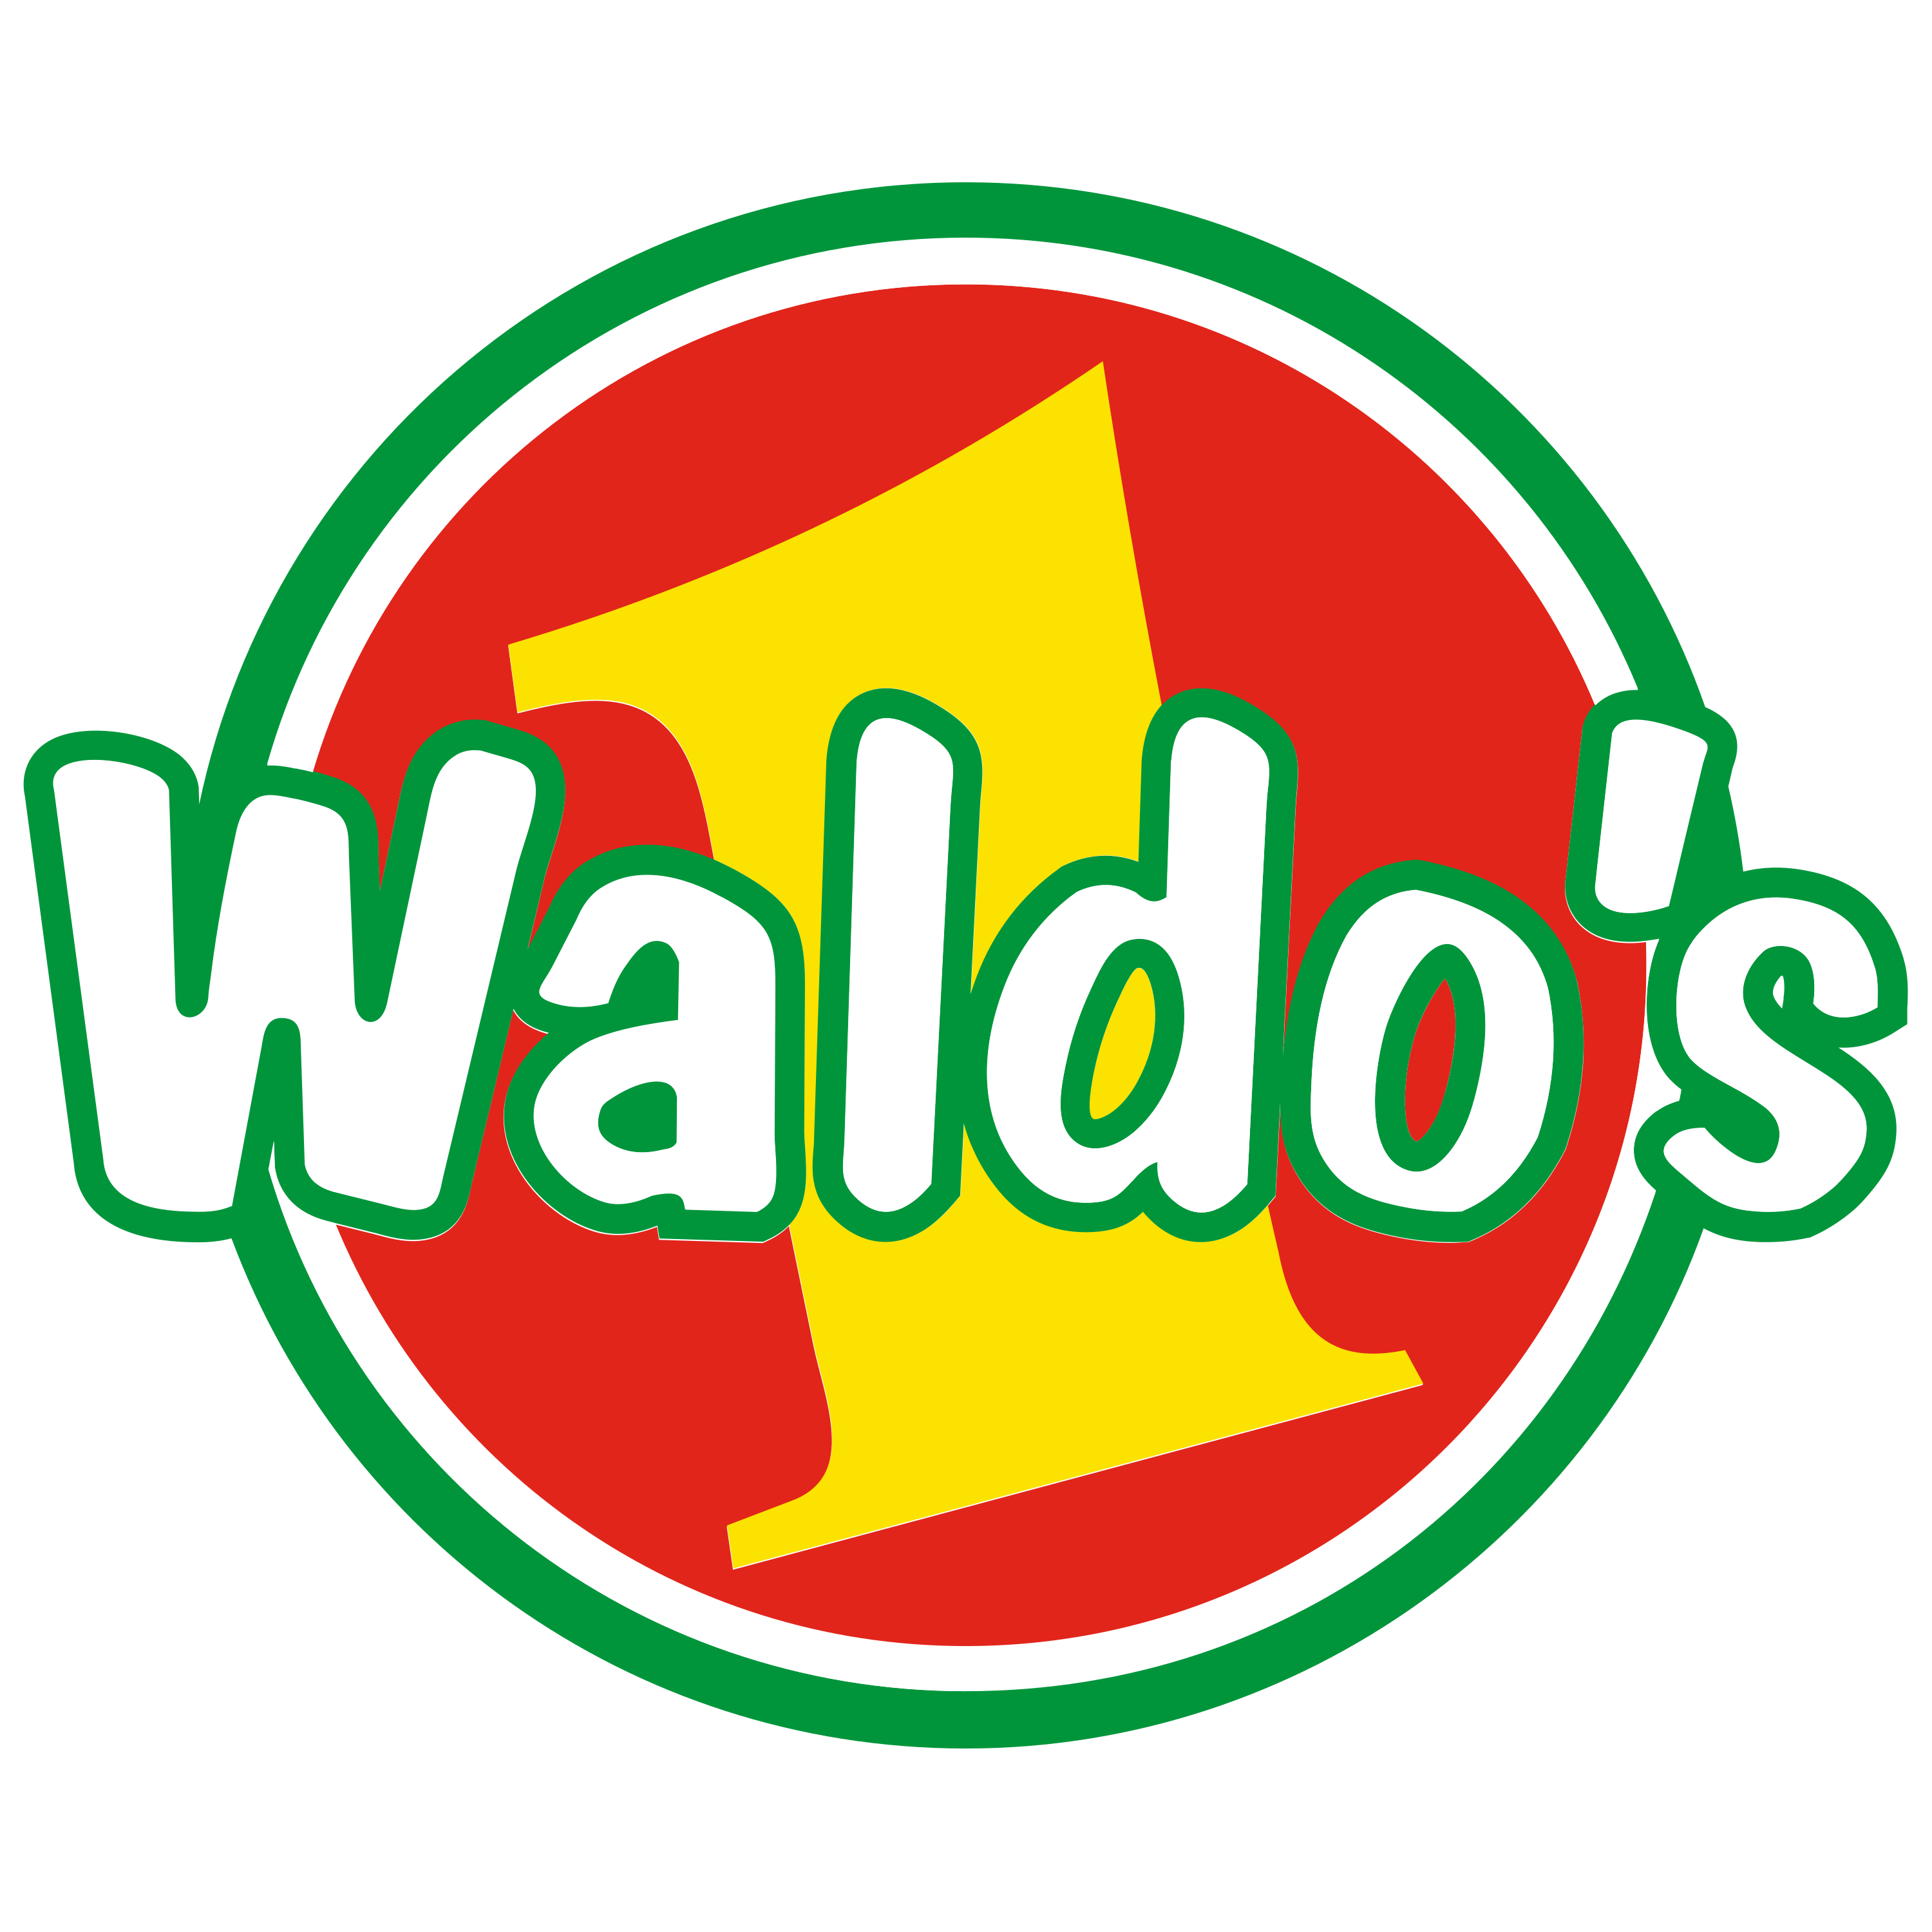 Waldos Logo  Transparent Image